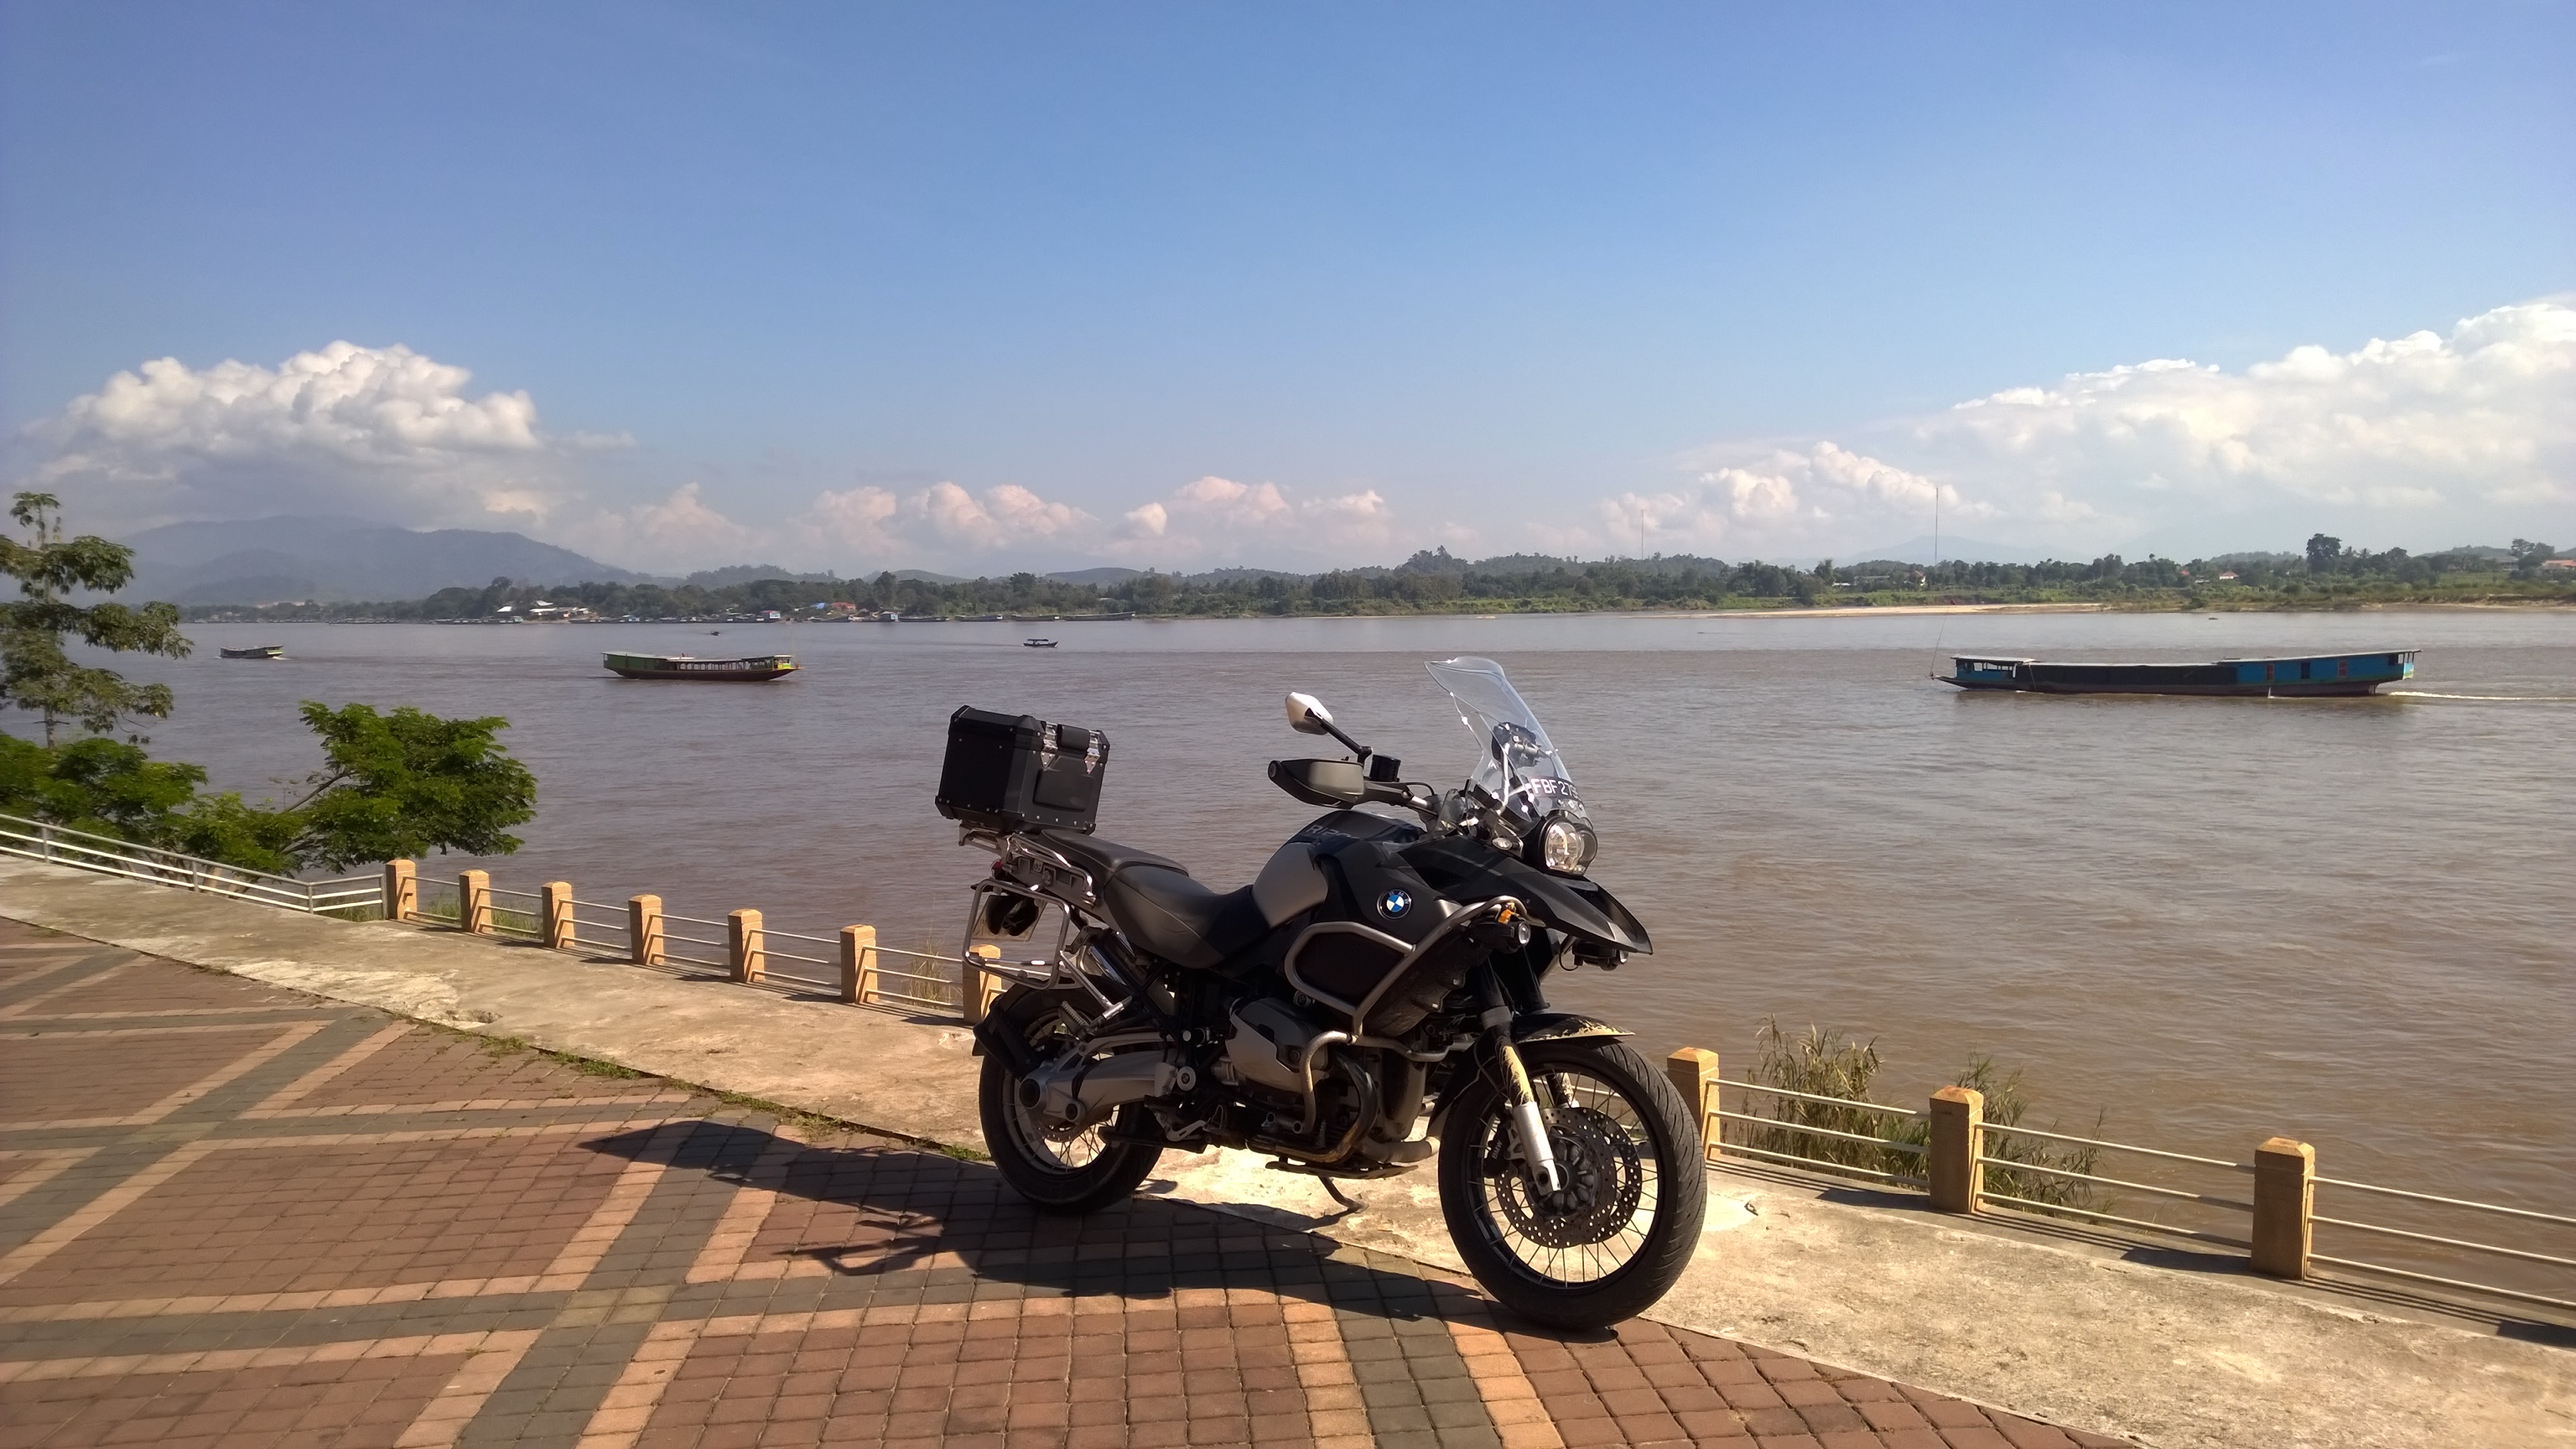 Mekong River Grenze zwischen Thailand und Laos.